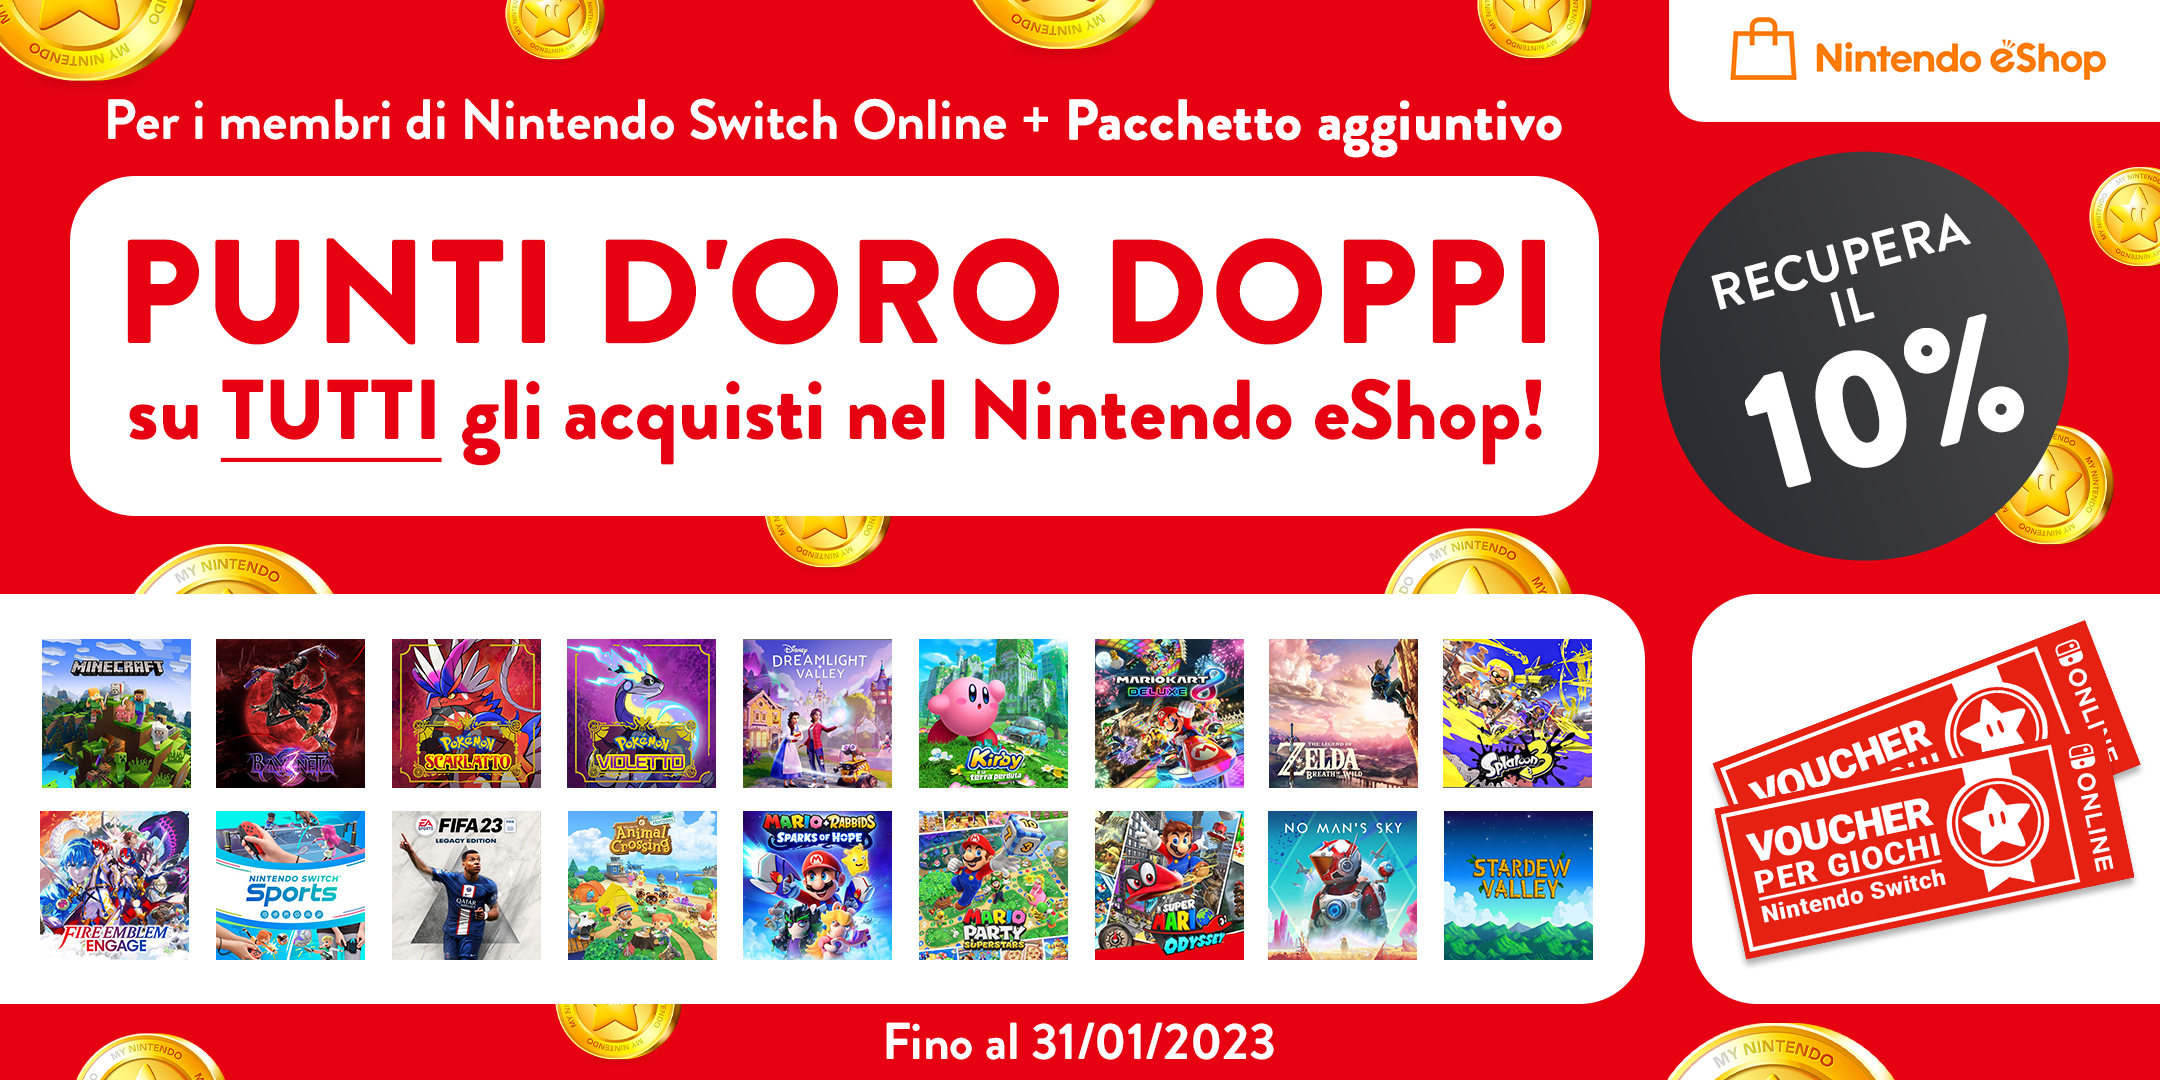 Punti d'oro doppi per i membri di Nintendo Switch Online + Pacchetto aggiuntivo